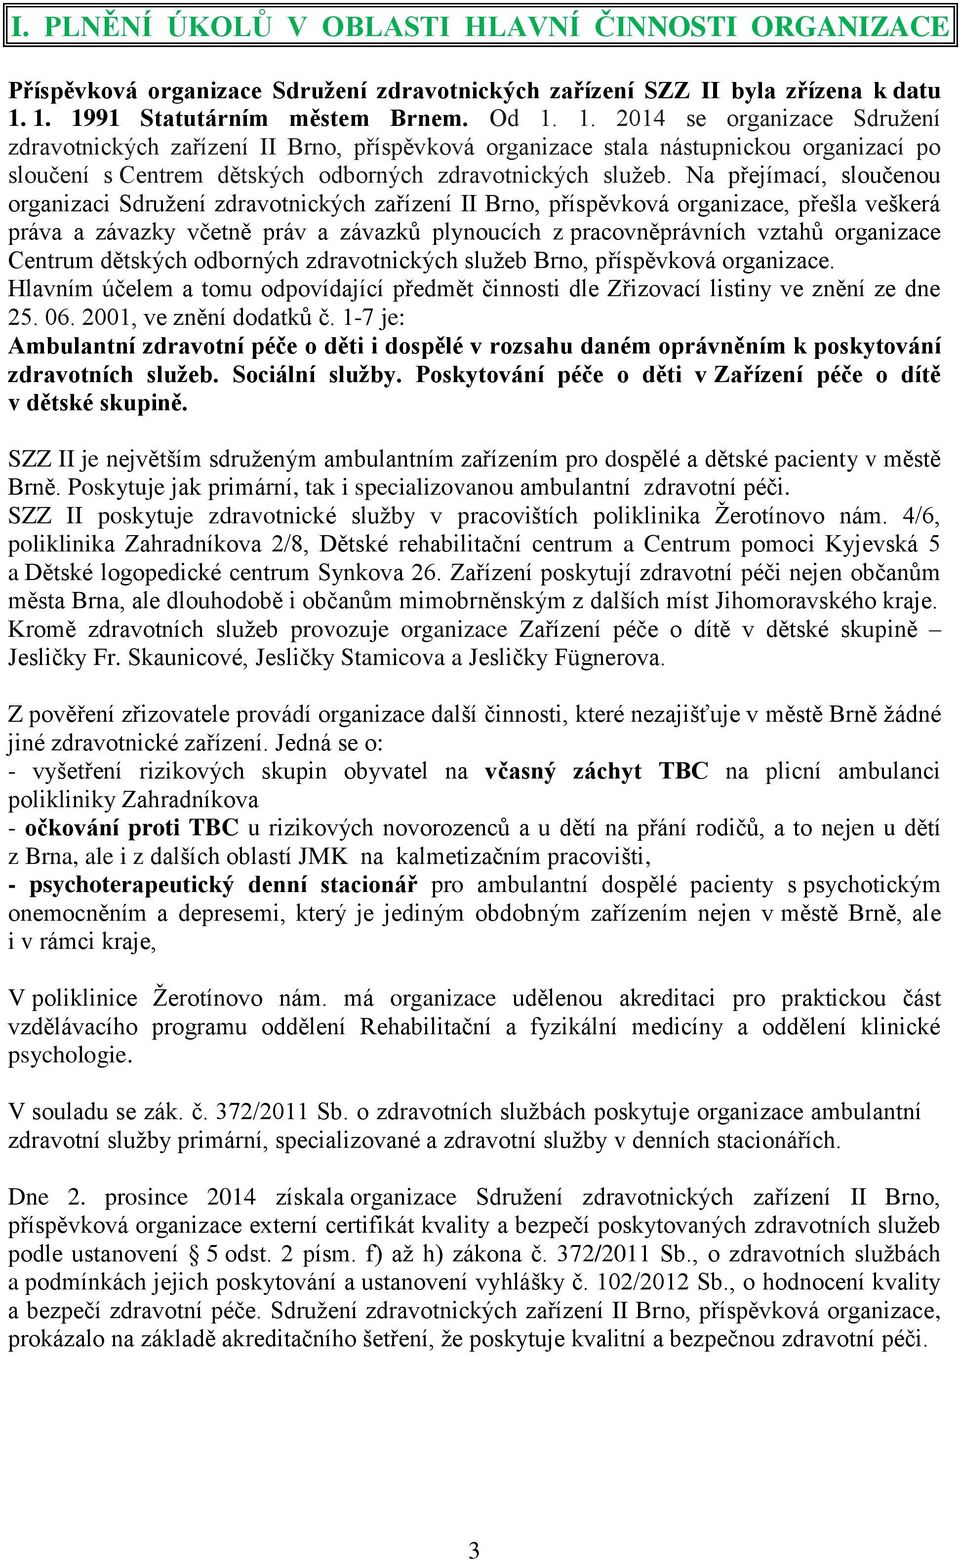 Na přejímací, sloučenou organizaci Sdružení zdravotnických zařízení II Brno, příspěvková organizace, přešla veškerá práva a závazky včetně práv a závazků plynoucích z pracovněprávních vztahů